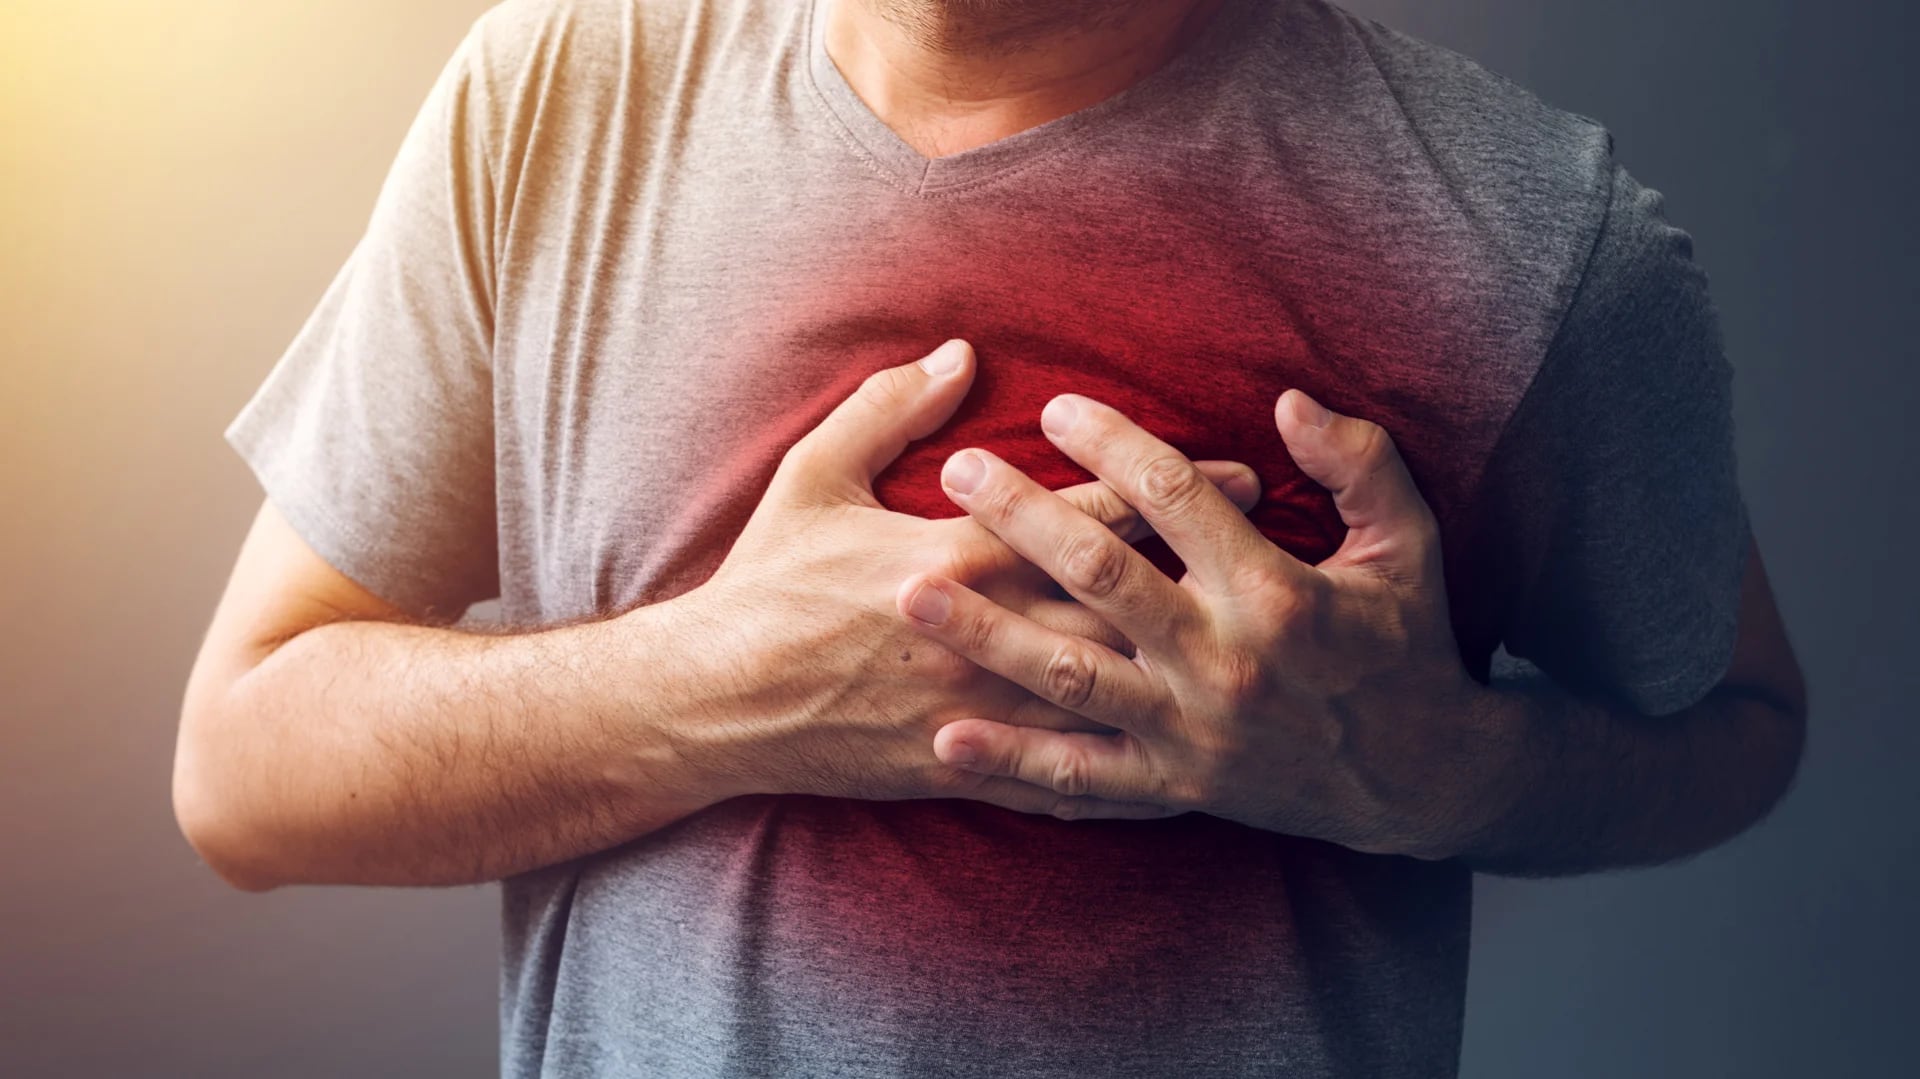 La enfermedad arterial periférica cuadruplica el riesgo de infarto (iStock)